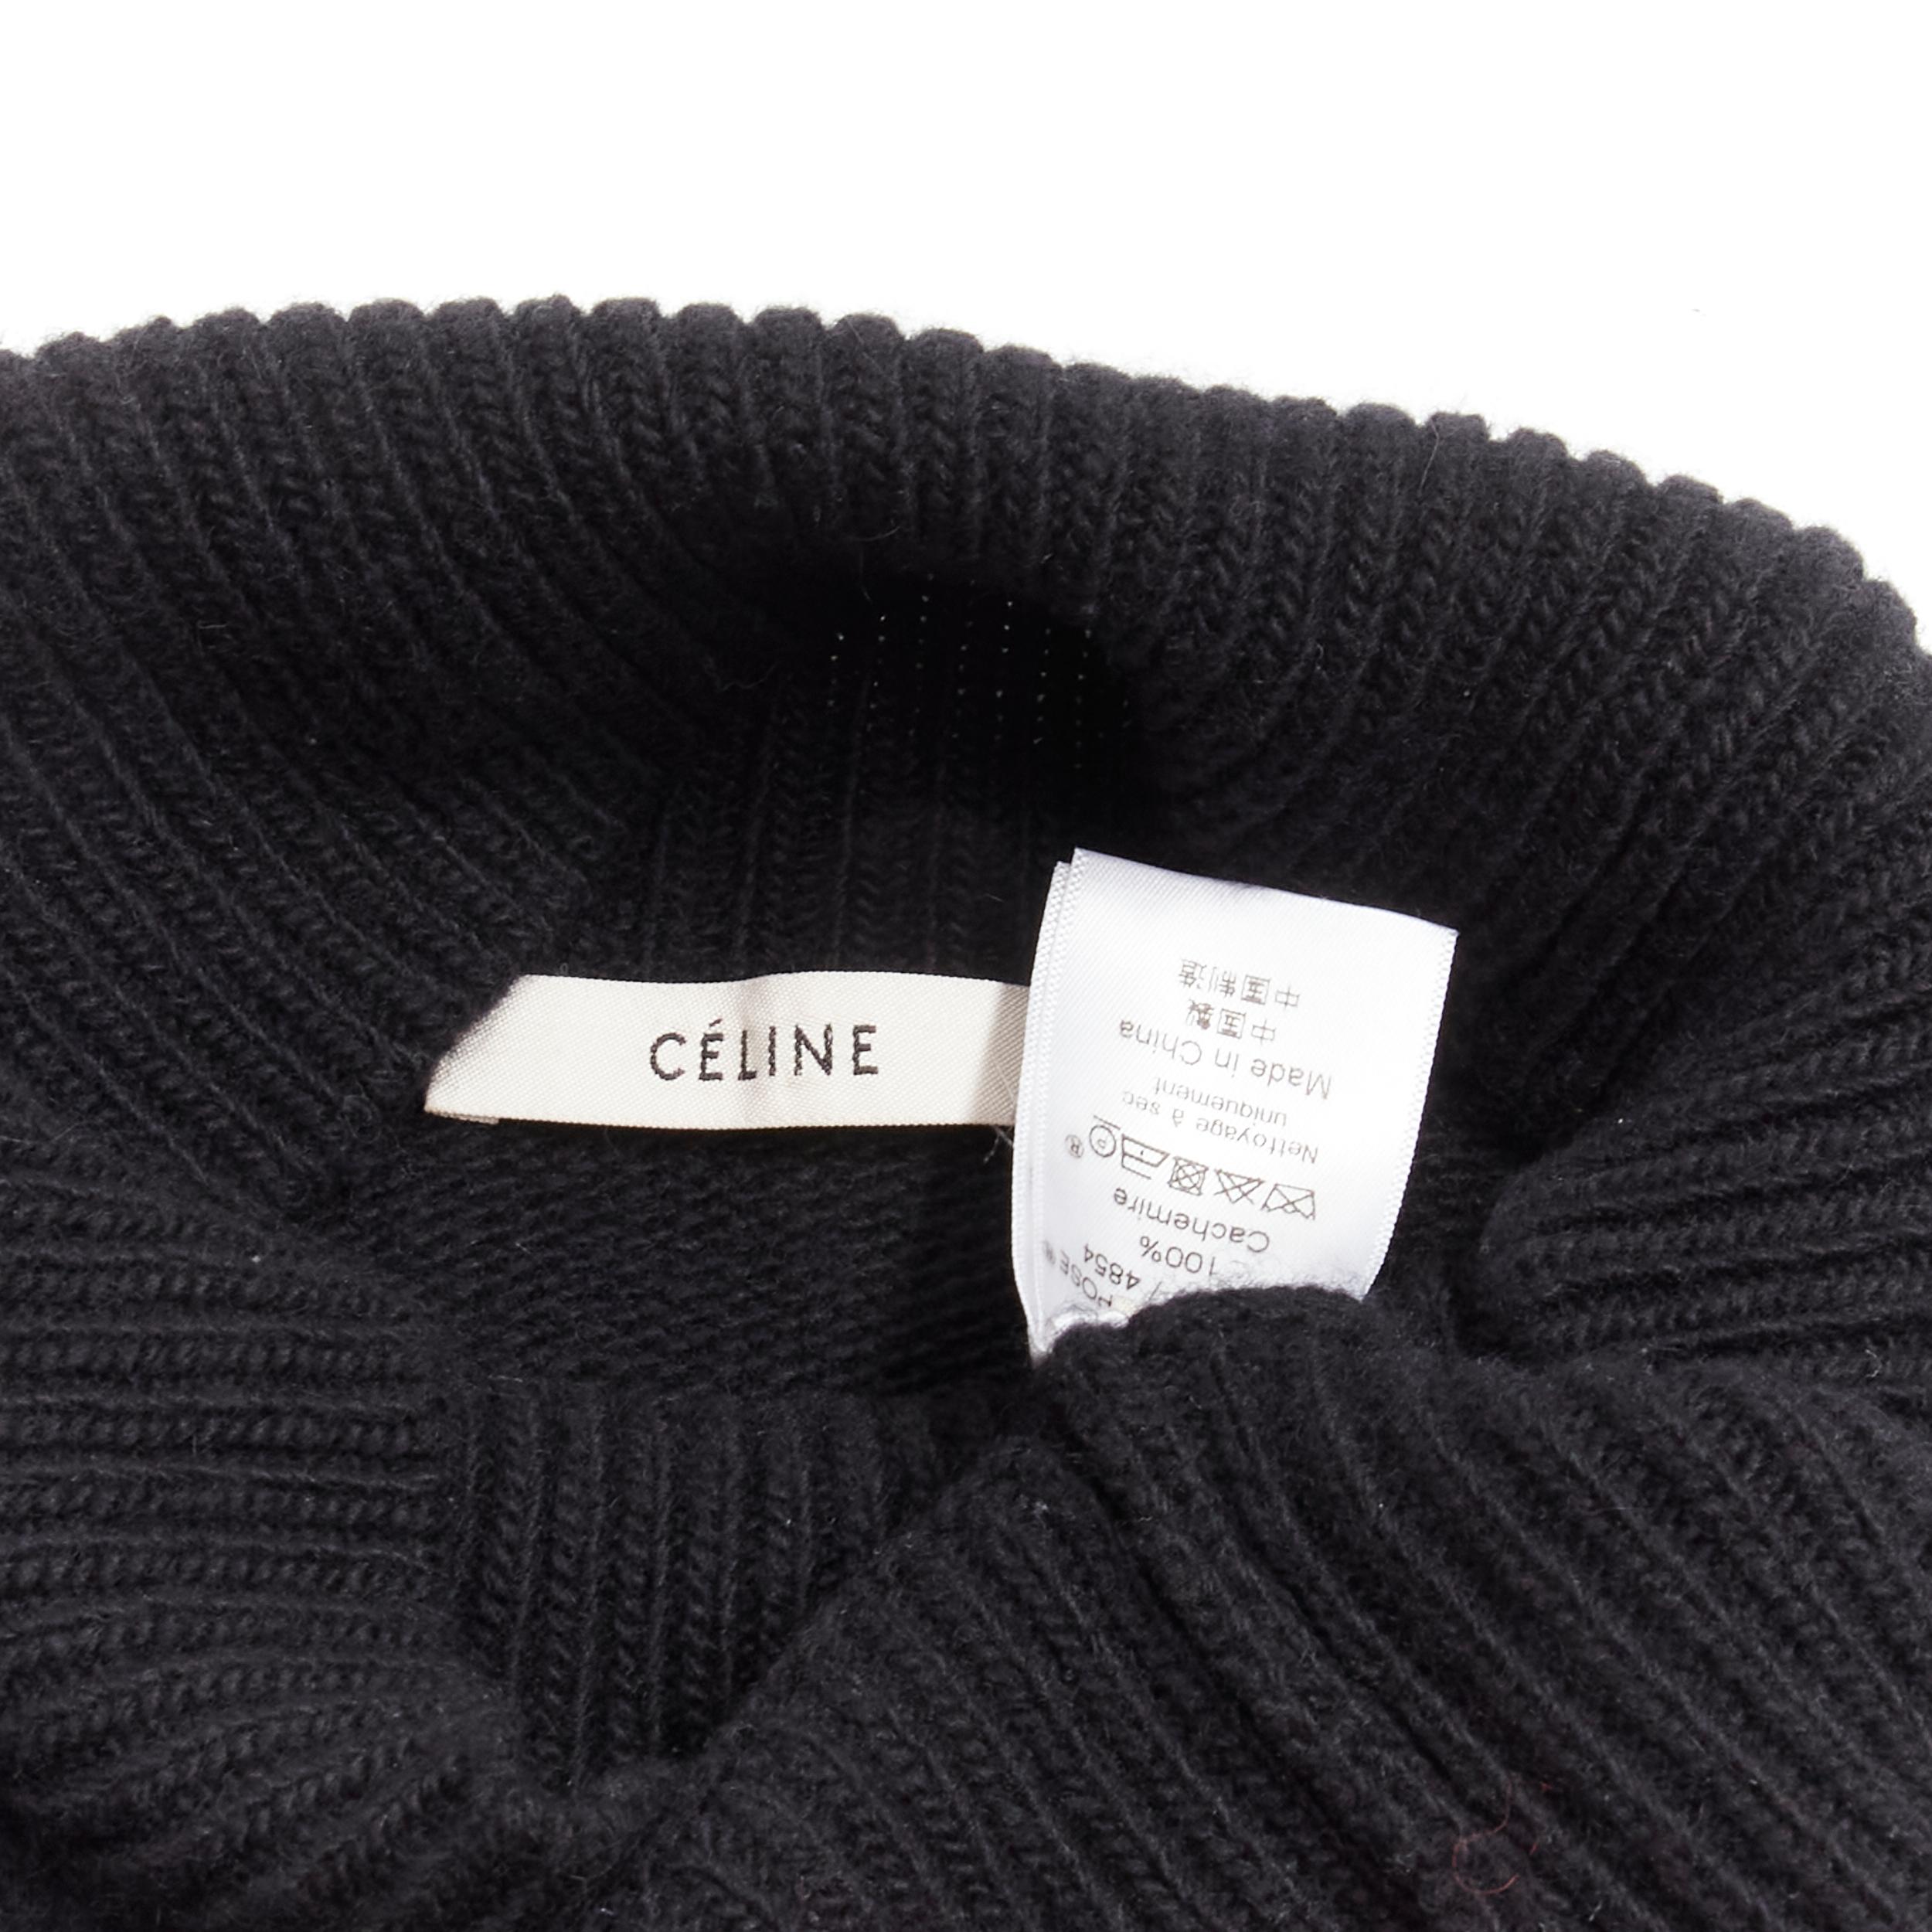 OLD CELINE Phoebe Philo black cashmere distressed hem cropped turtleneck top S For Sale 4